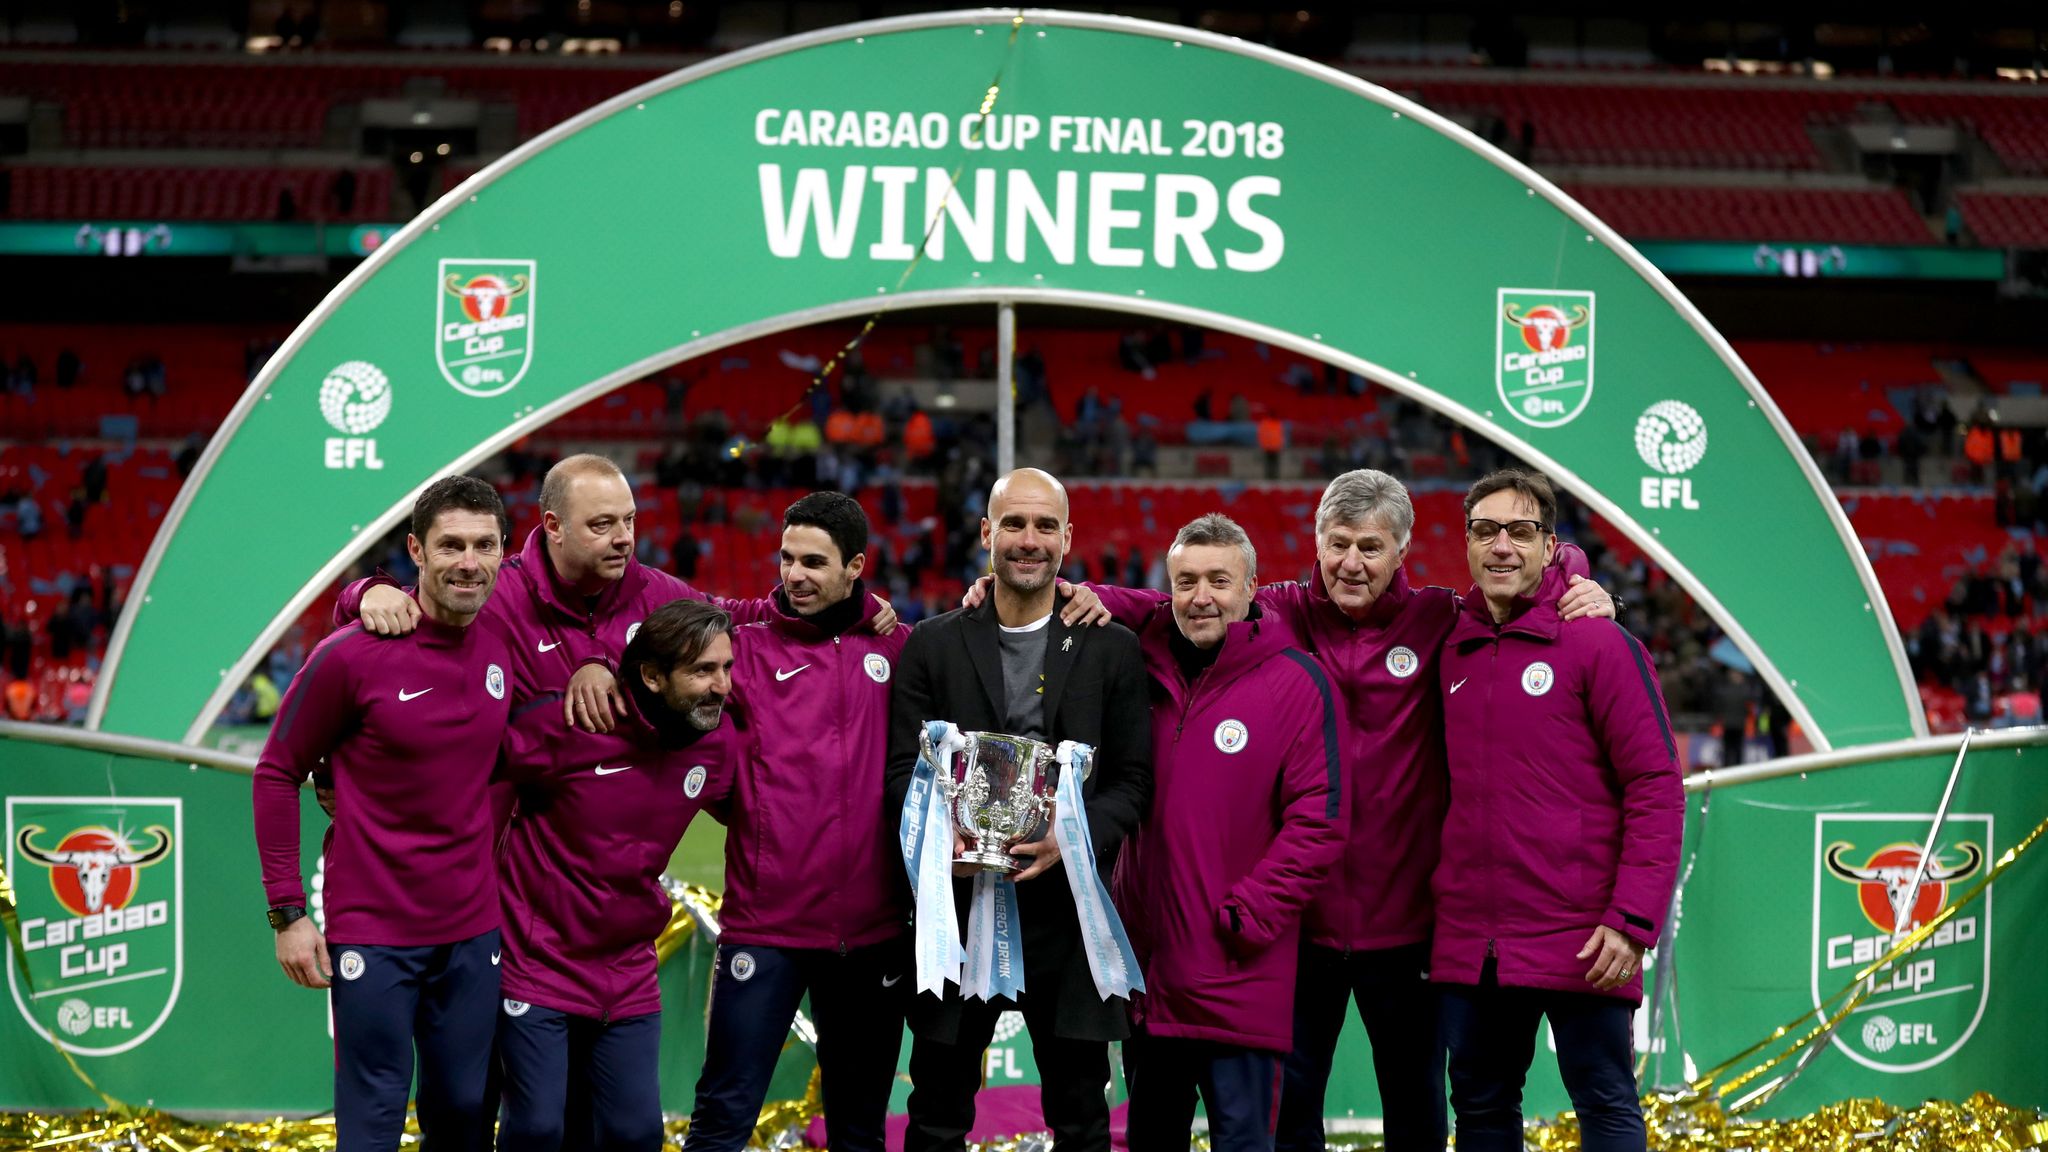 carabao cup winners 2018